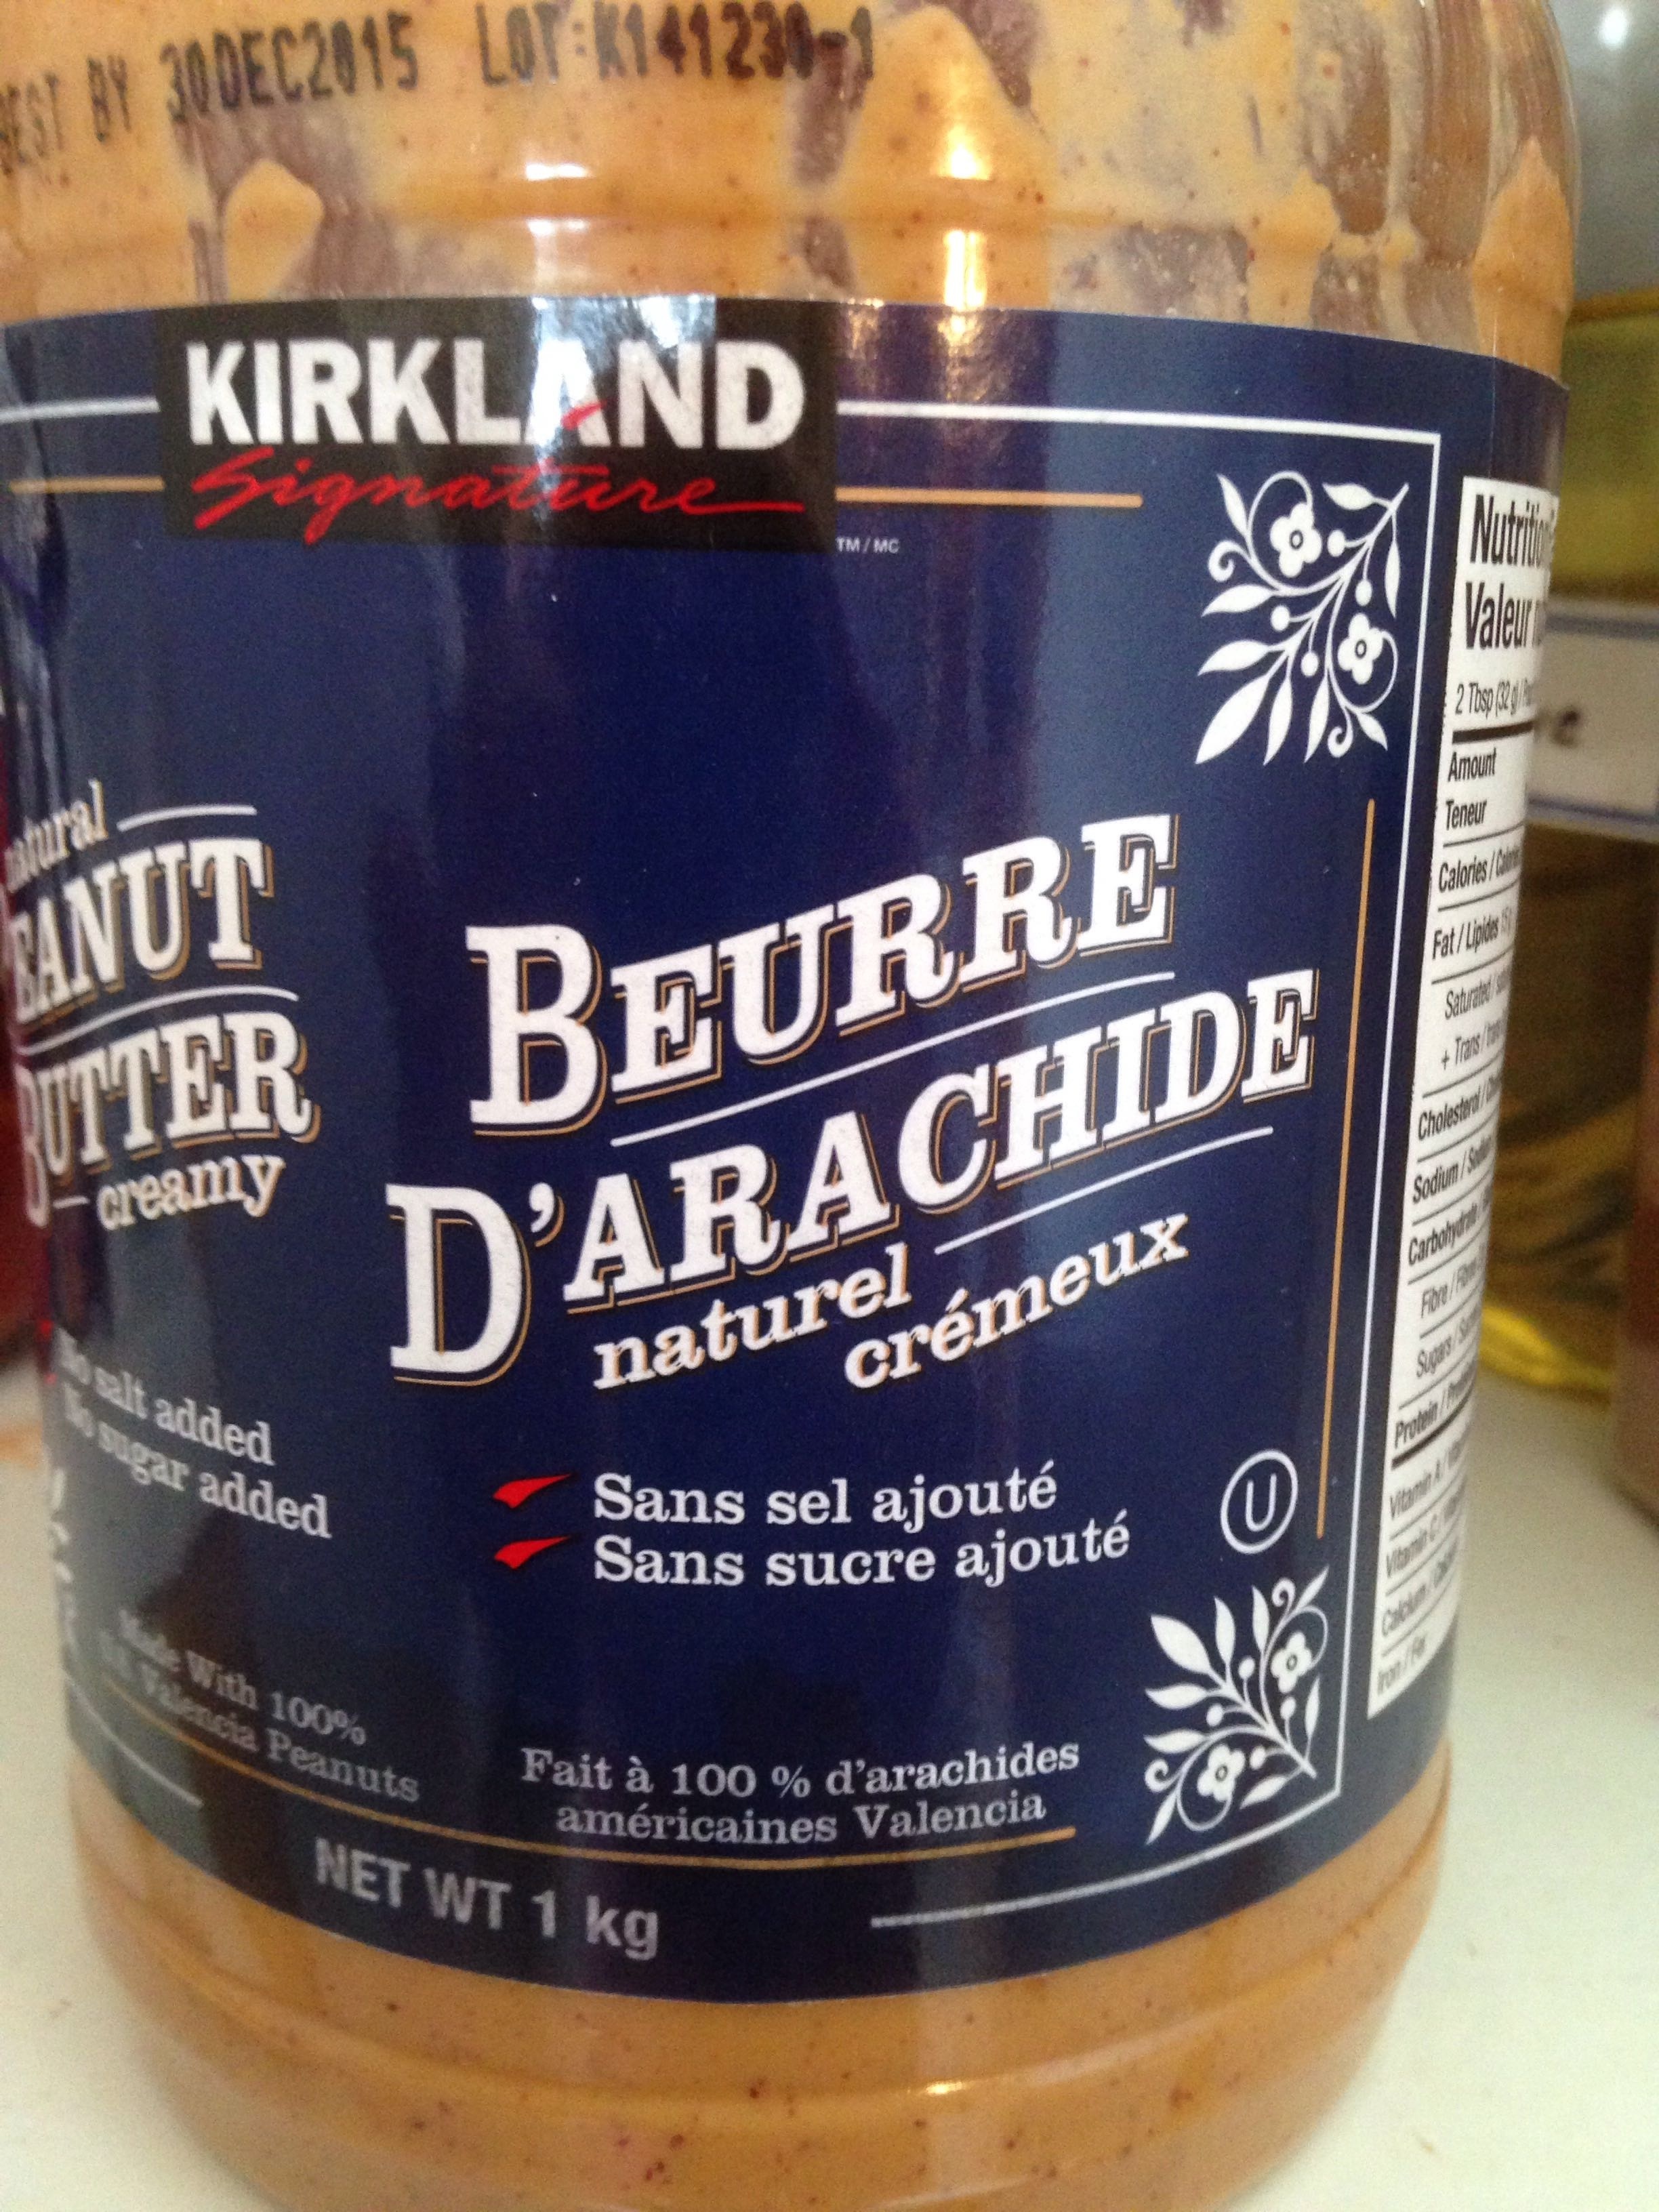 Beurre d'arachide - Produit - fr